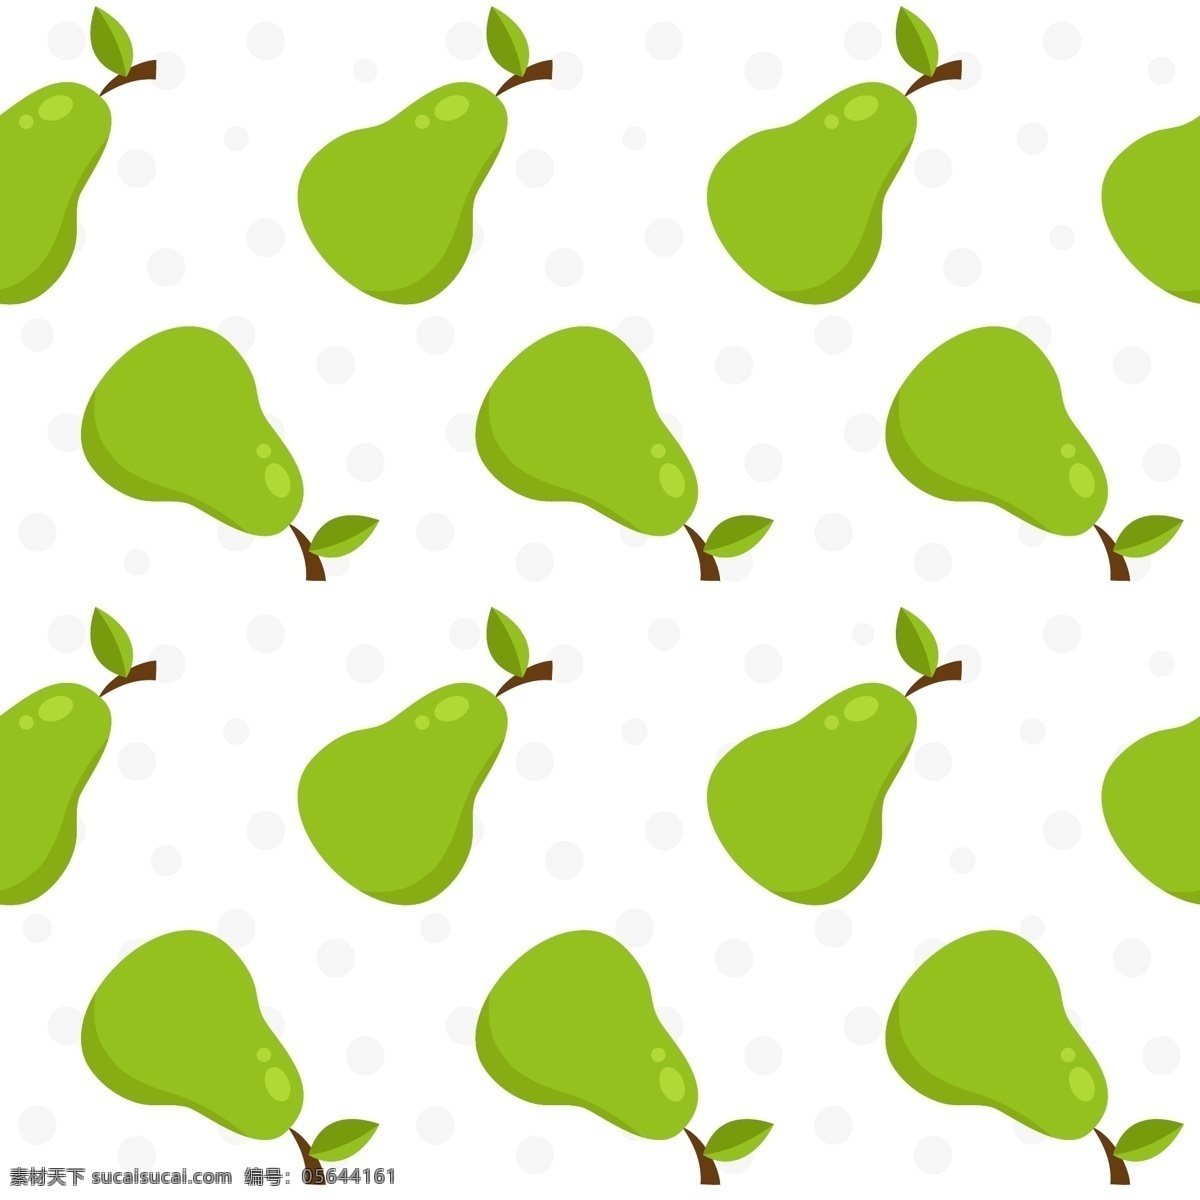 梨模式的背景 背景 图案 食物 夏天 水果 墙纸 热带 饮料 果汁 自然 健康 自然背景 饮食 健康食品 营养